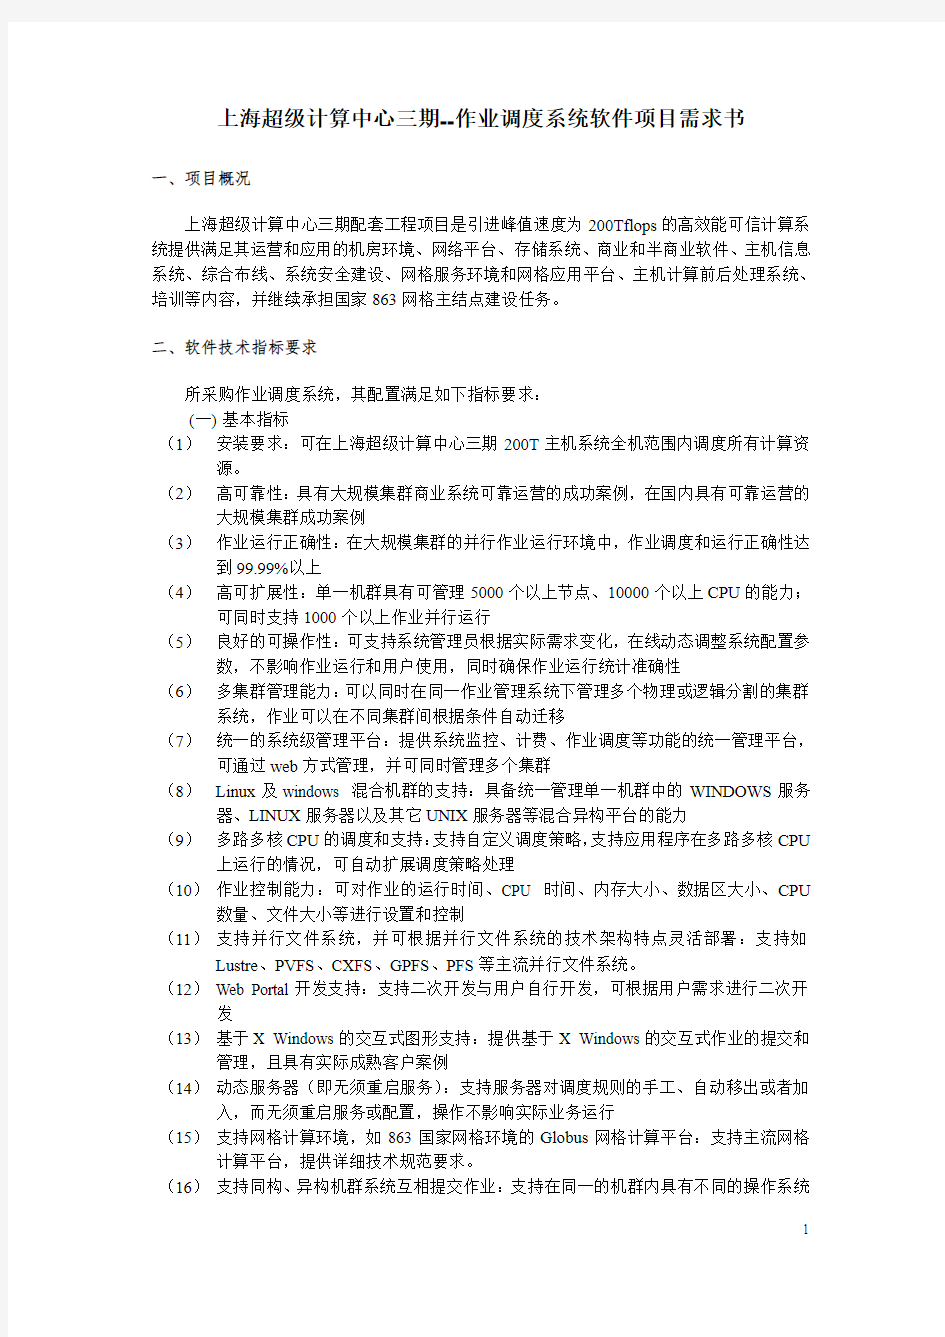 上海超级计算中心三期--作业调度系统软件方案需求书